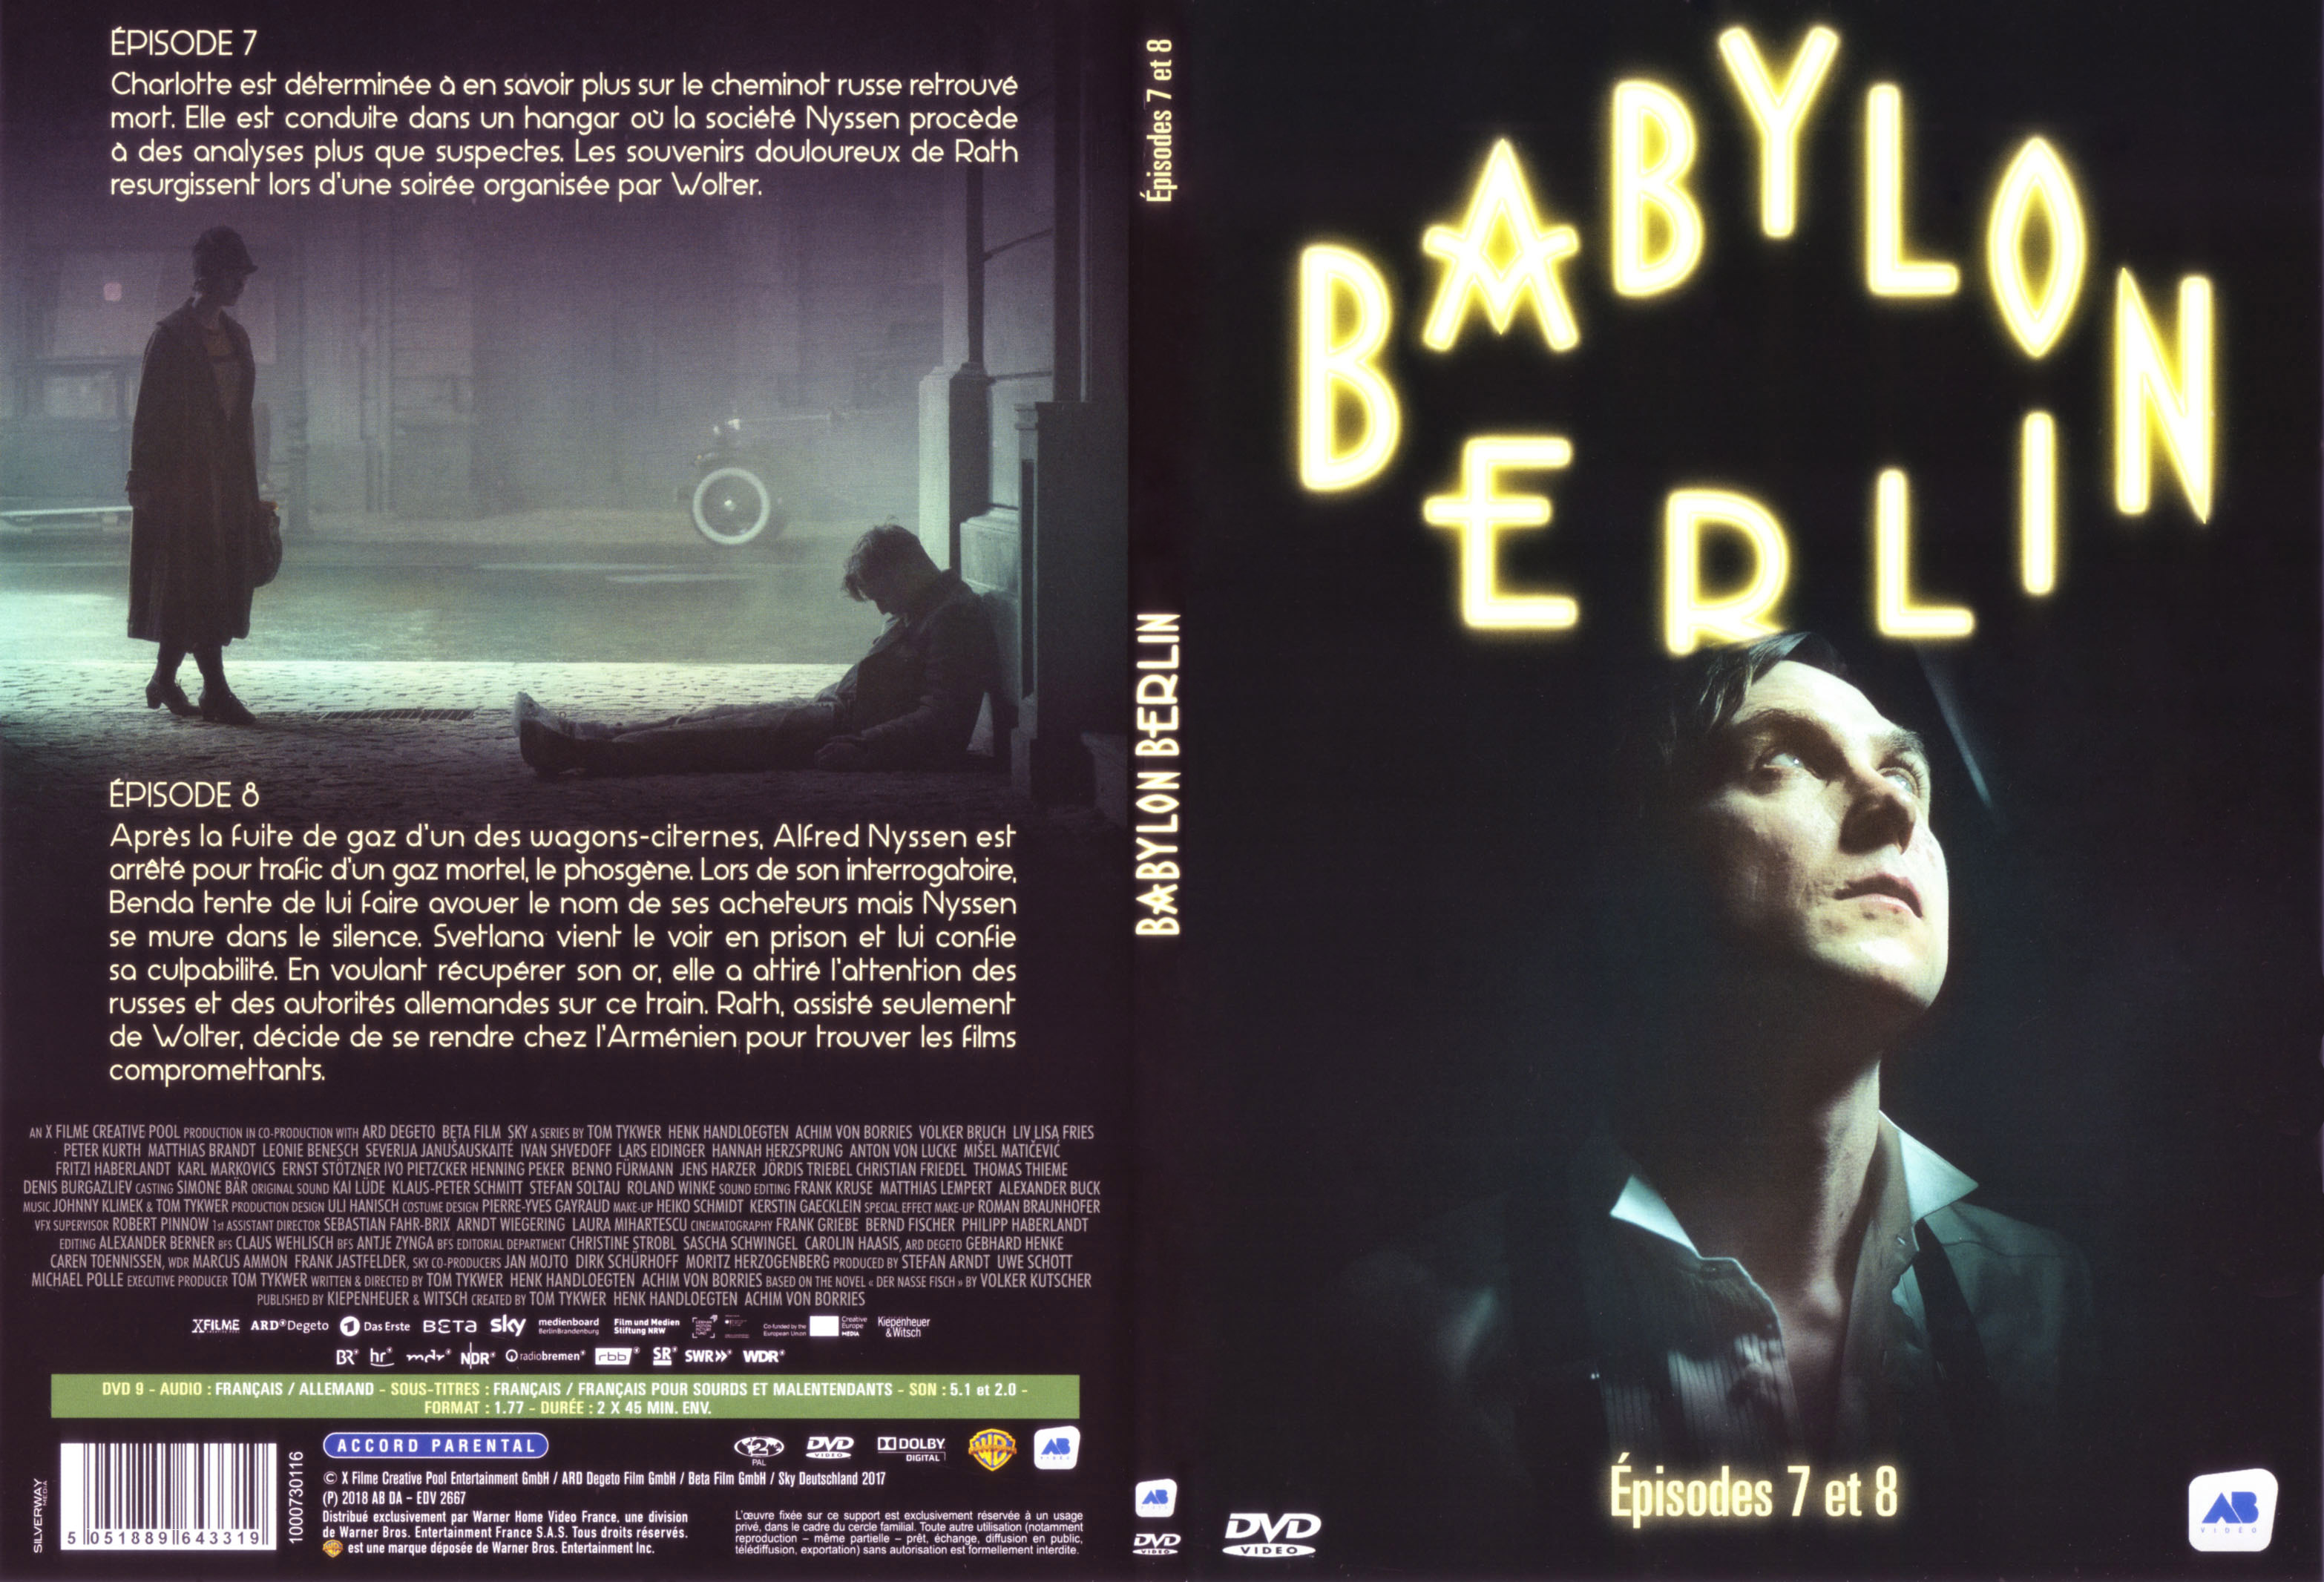 Jaquette DVD Babylon Berlin Ep 7-8